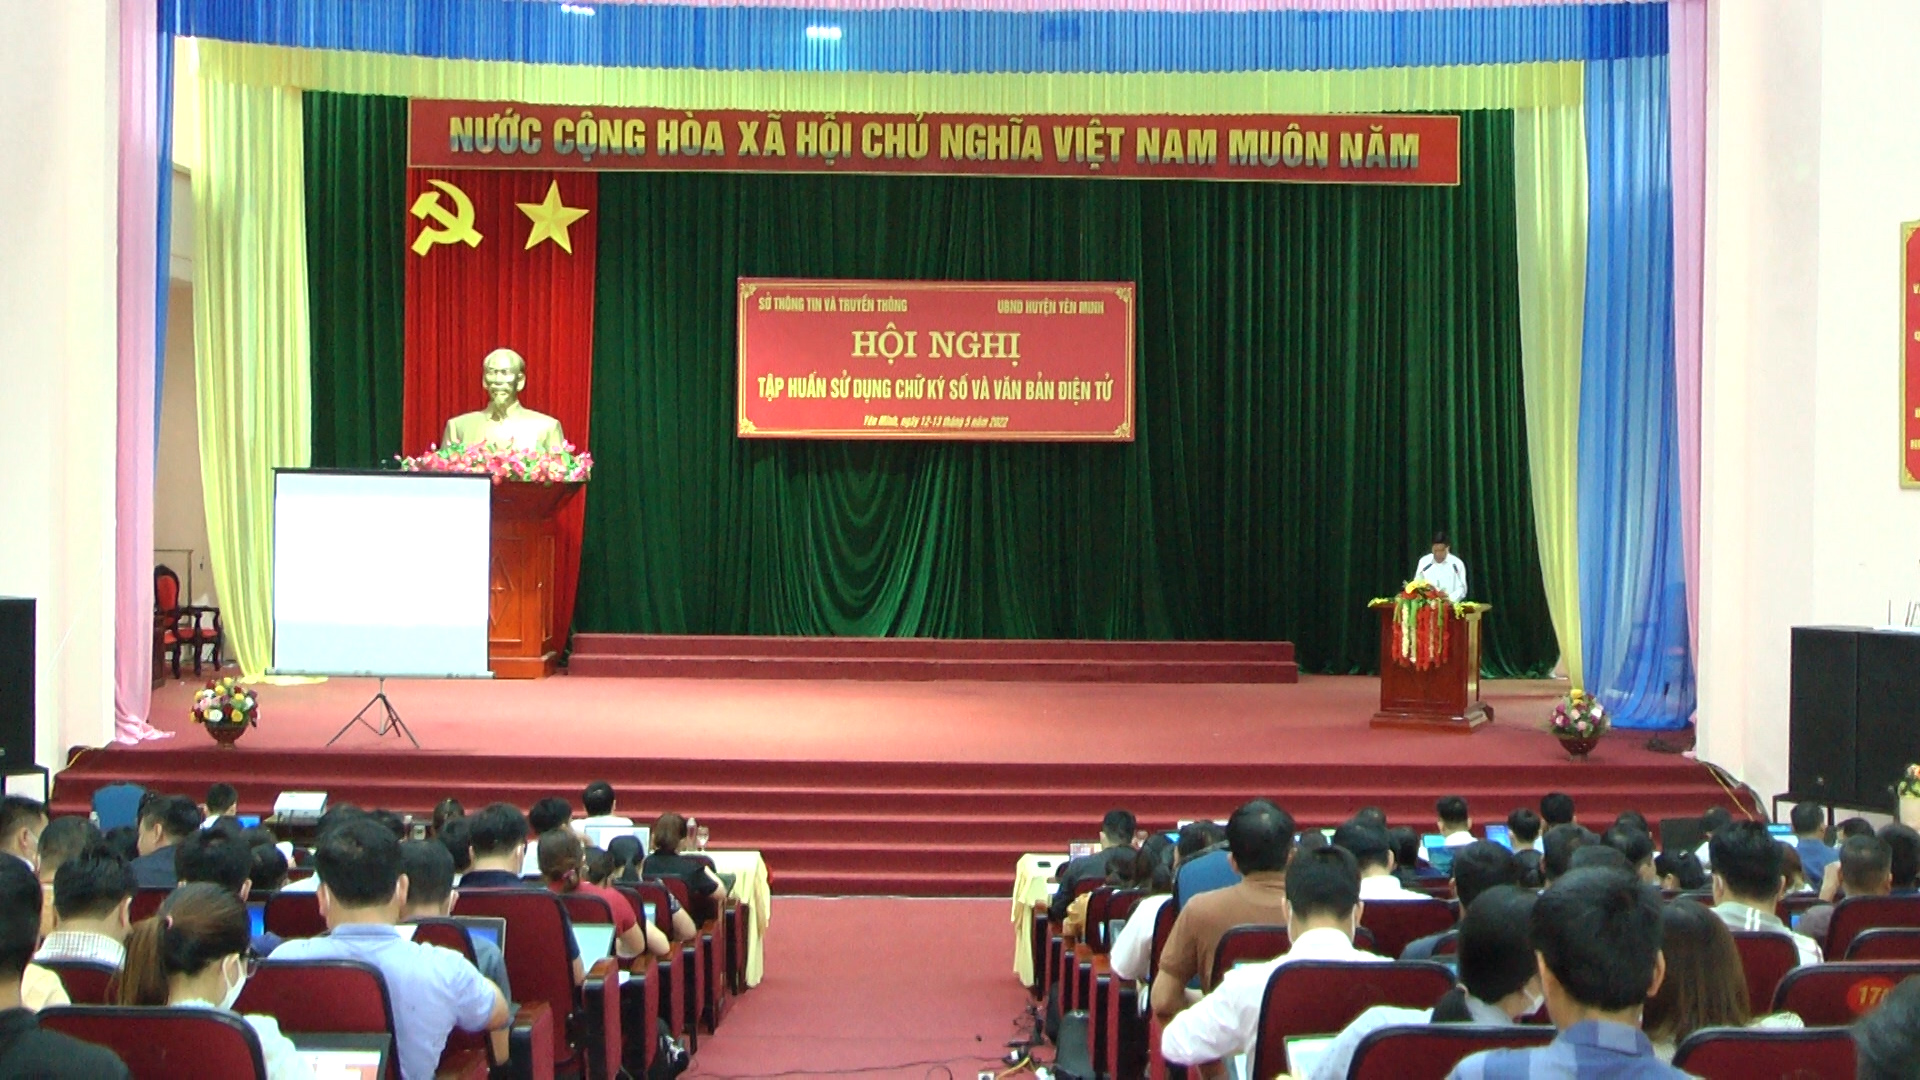 Yên Minh: Hội nghị tập huấn sử dụng chữ kỹ số và văn bản điện tử